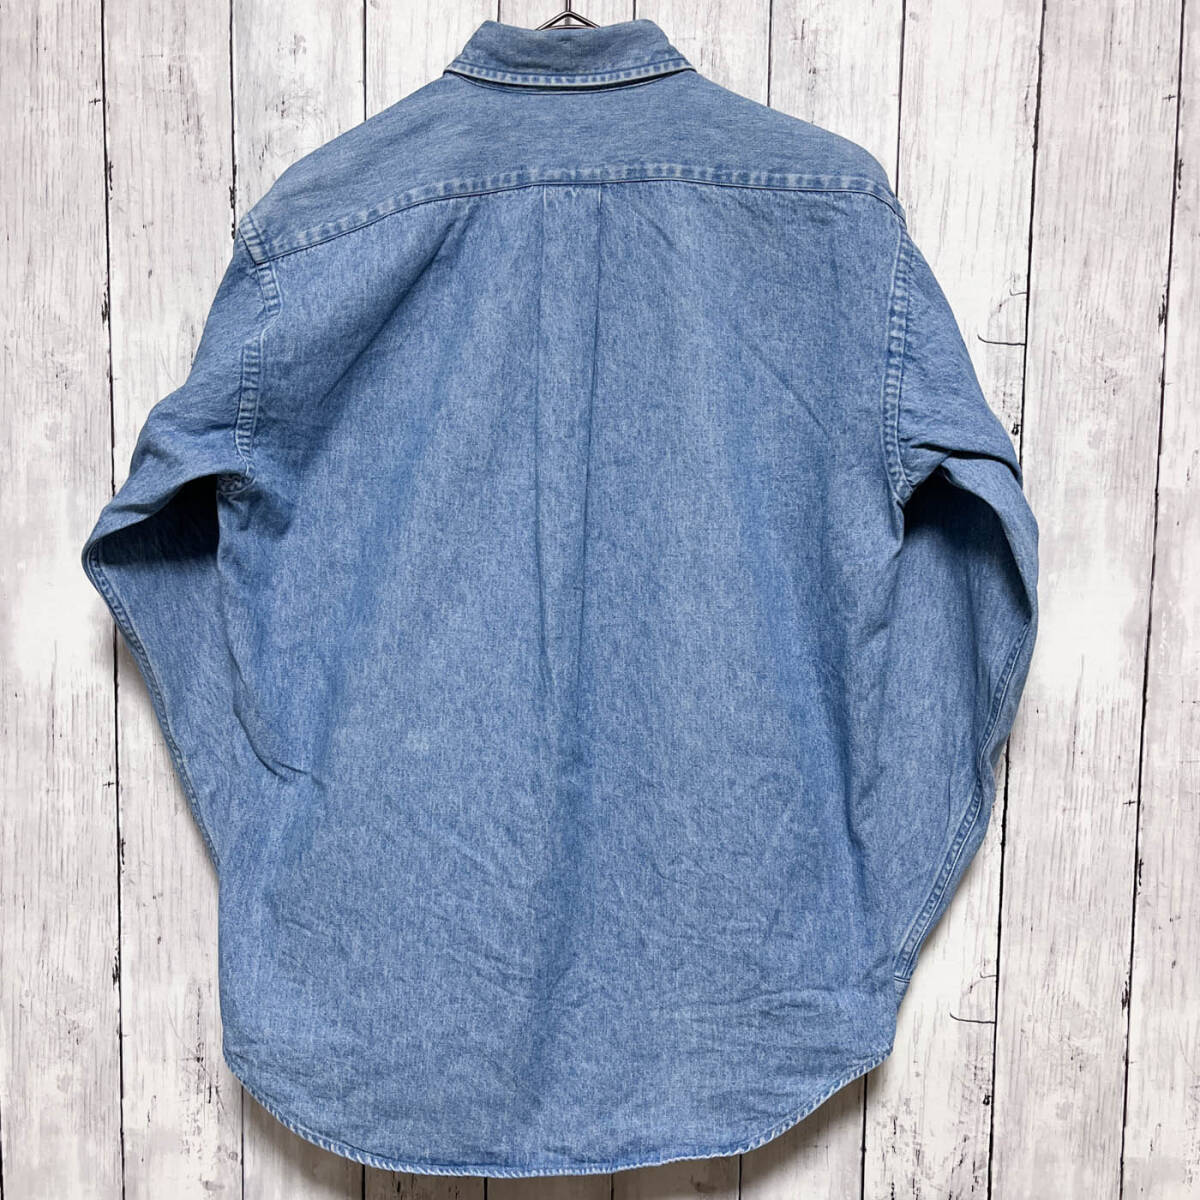  Ralph Lauren Ralph Lauren Denim shirt long sleeve shirt lady's one Point cotton 100% L size 5-631